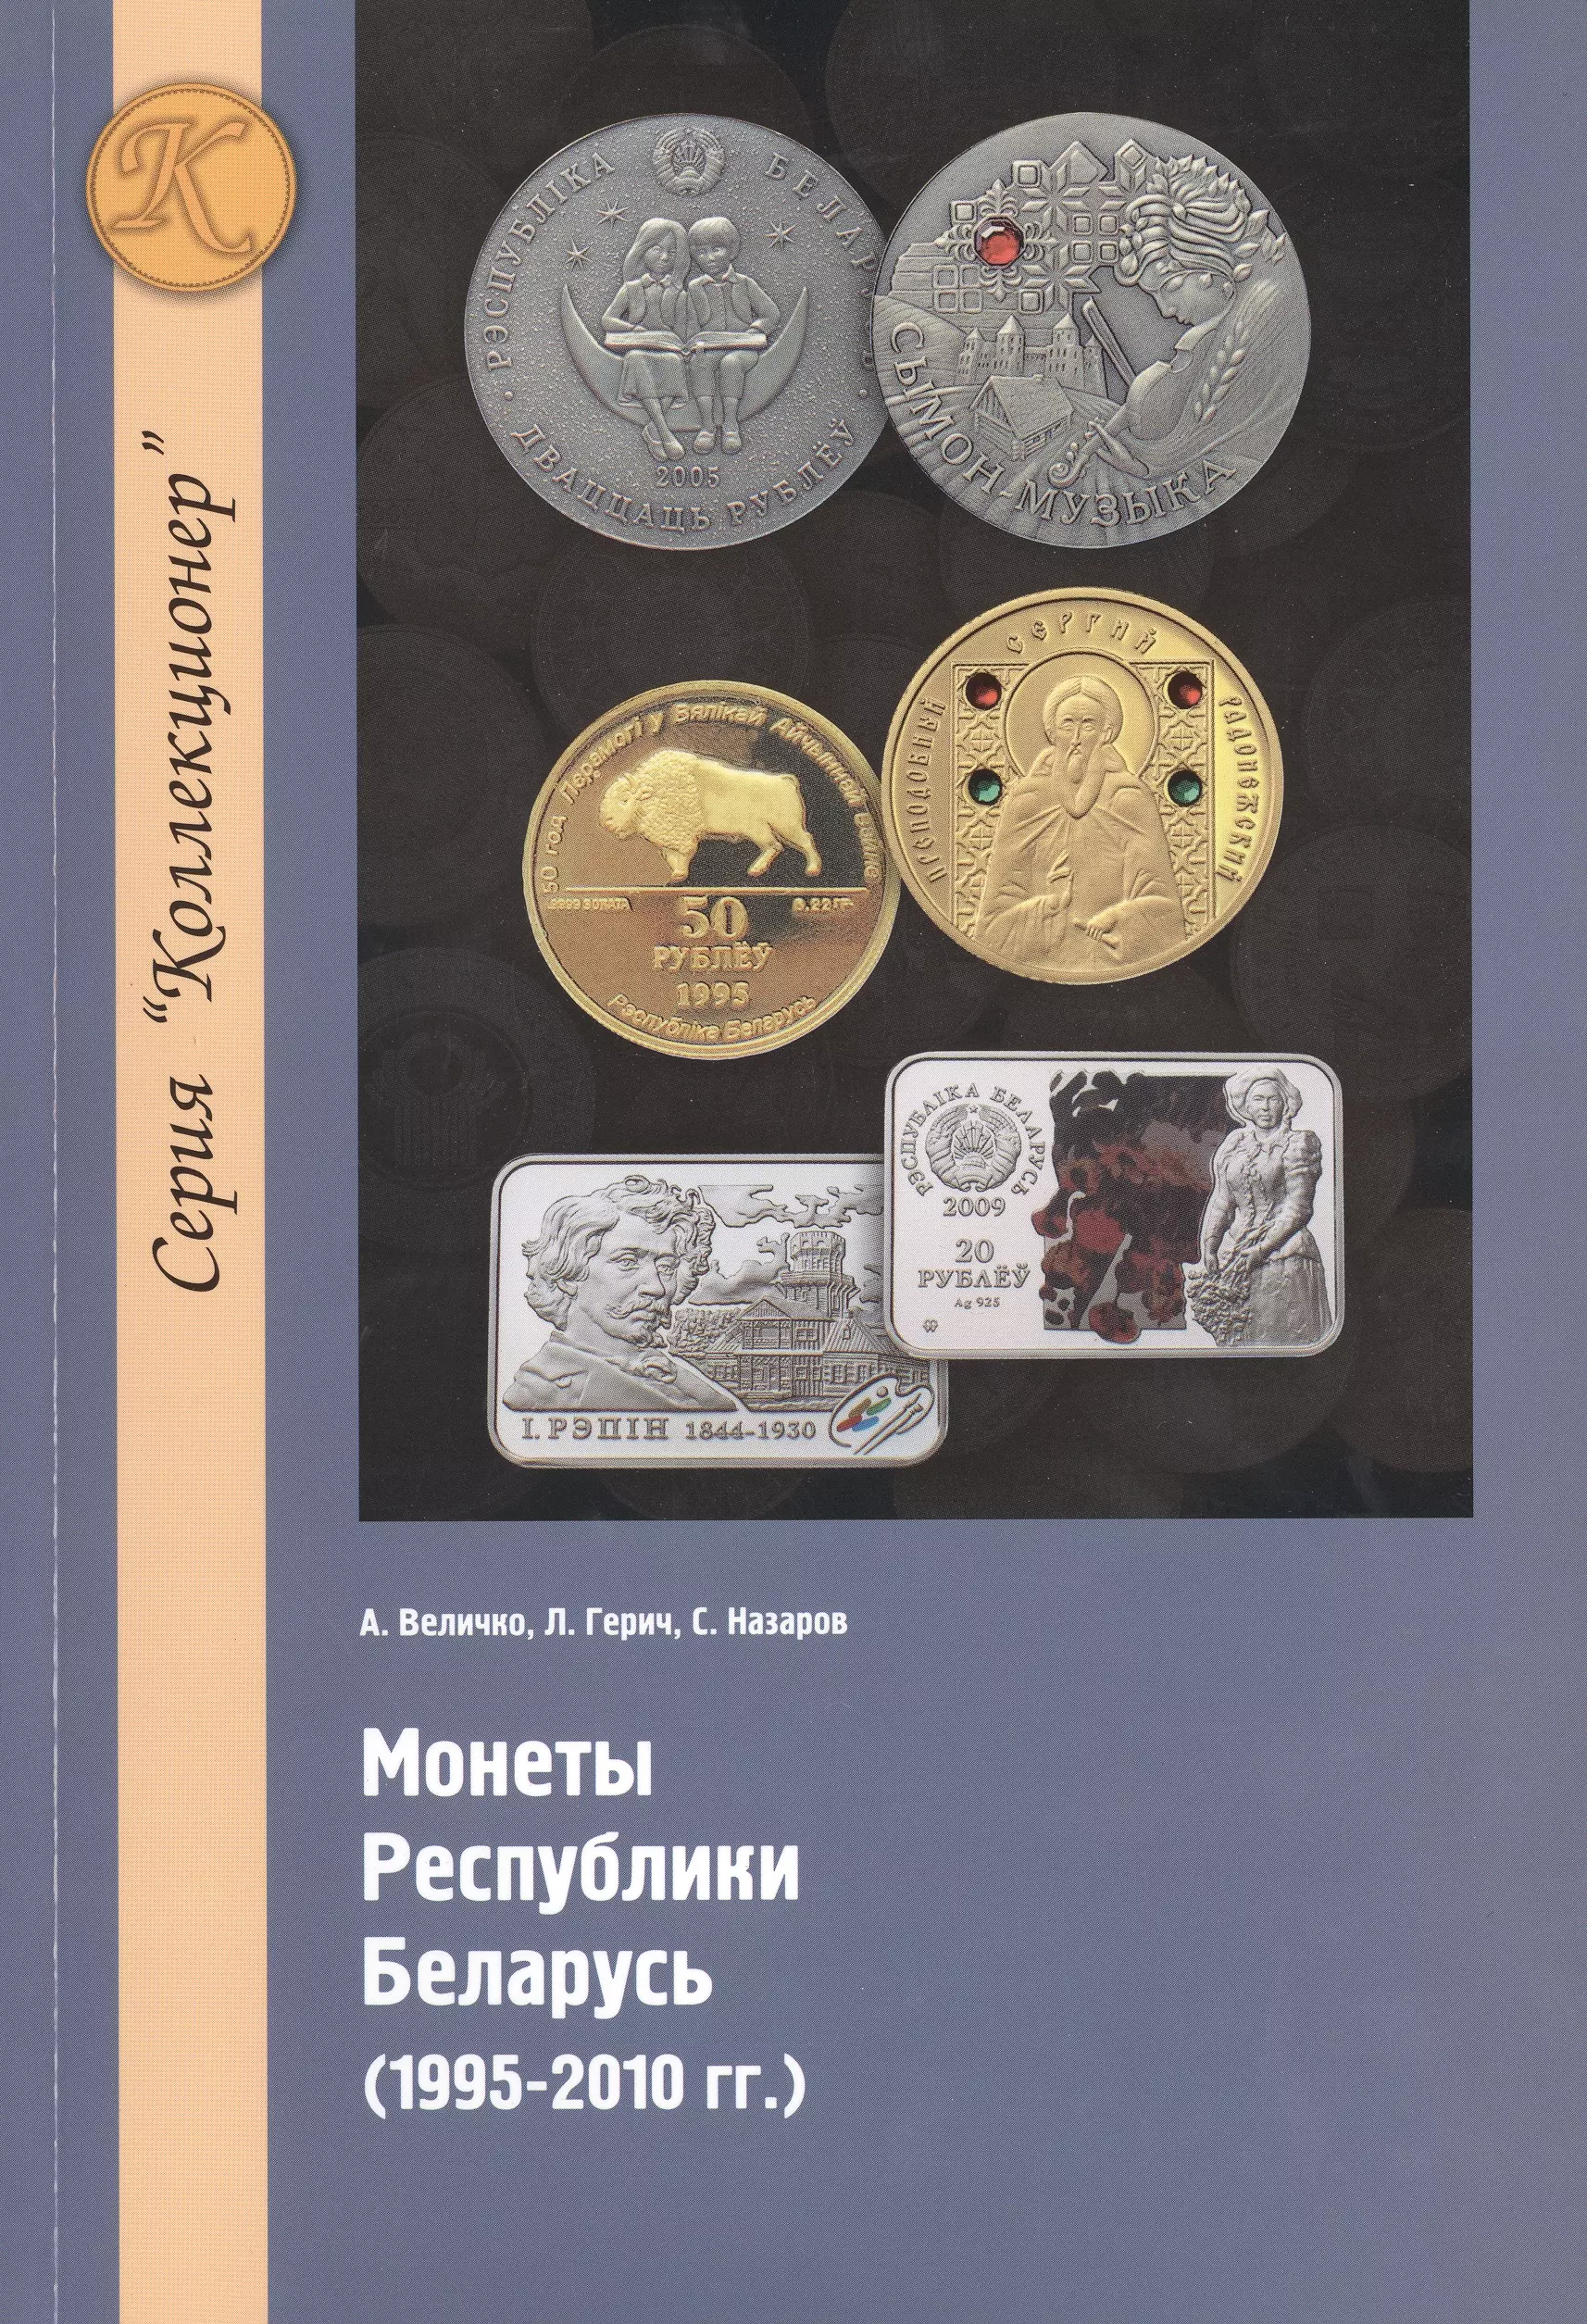  - Монеты республики Беларусь (1995-2010 гг.)